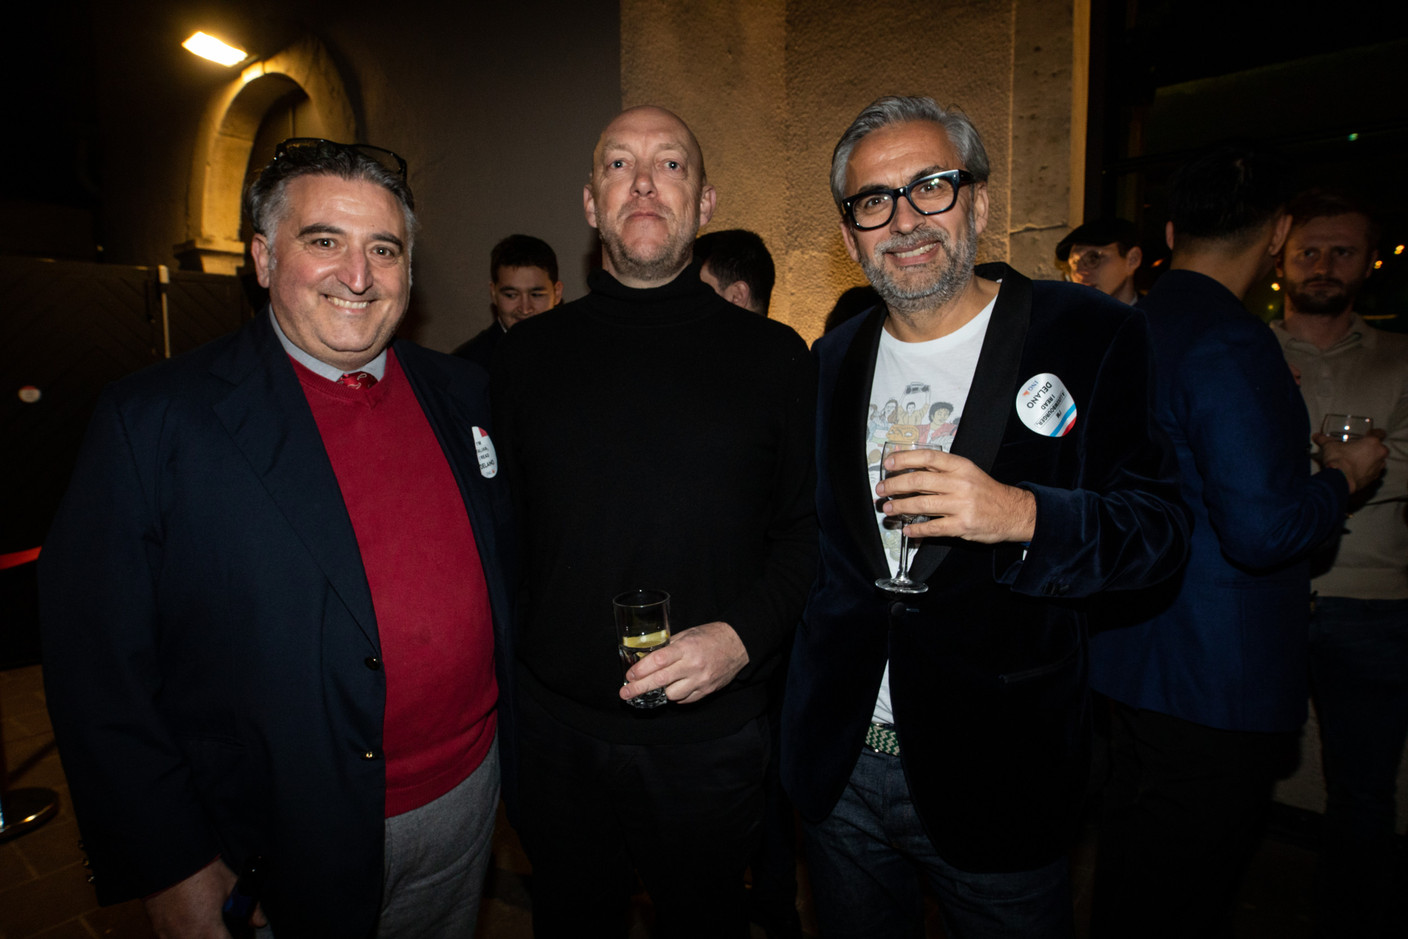 Andrew Phillips (Andrew Phillips), centre; Mike Koedinger (Delano’s publisher), on right. Photo: Eva Krins/Maison Moderne